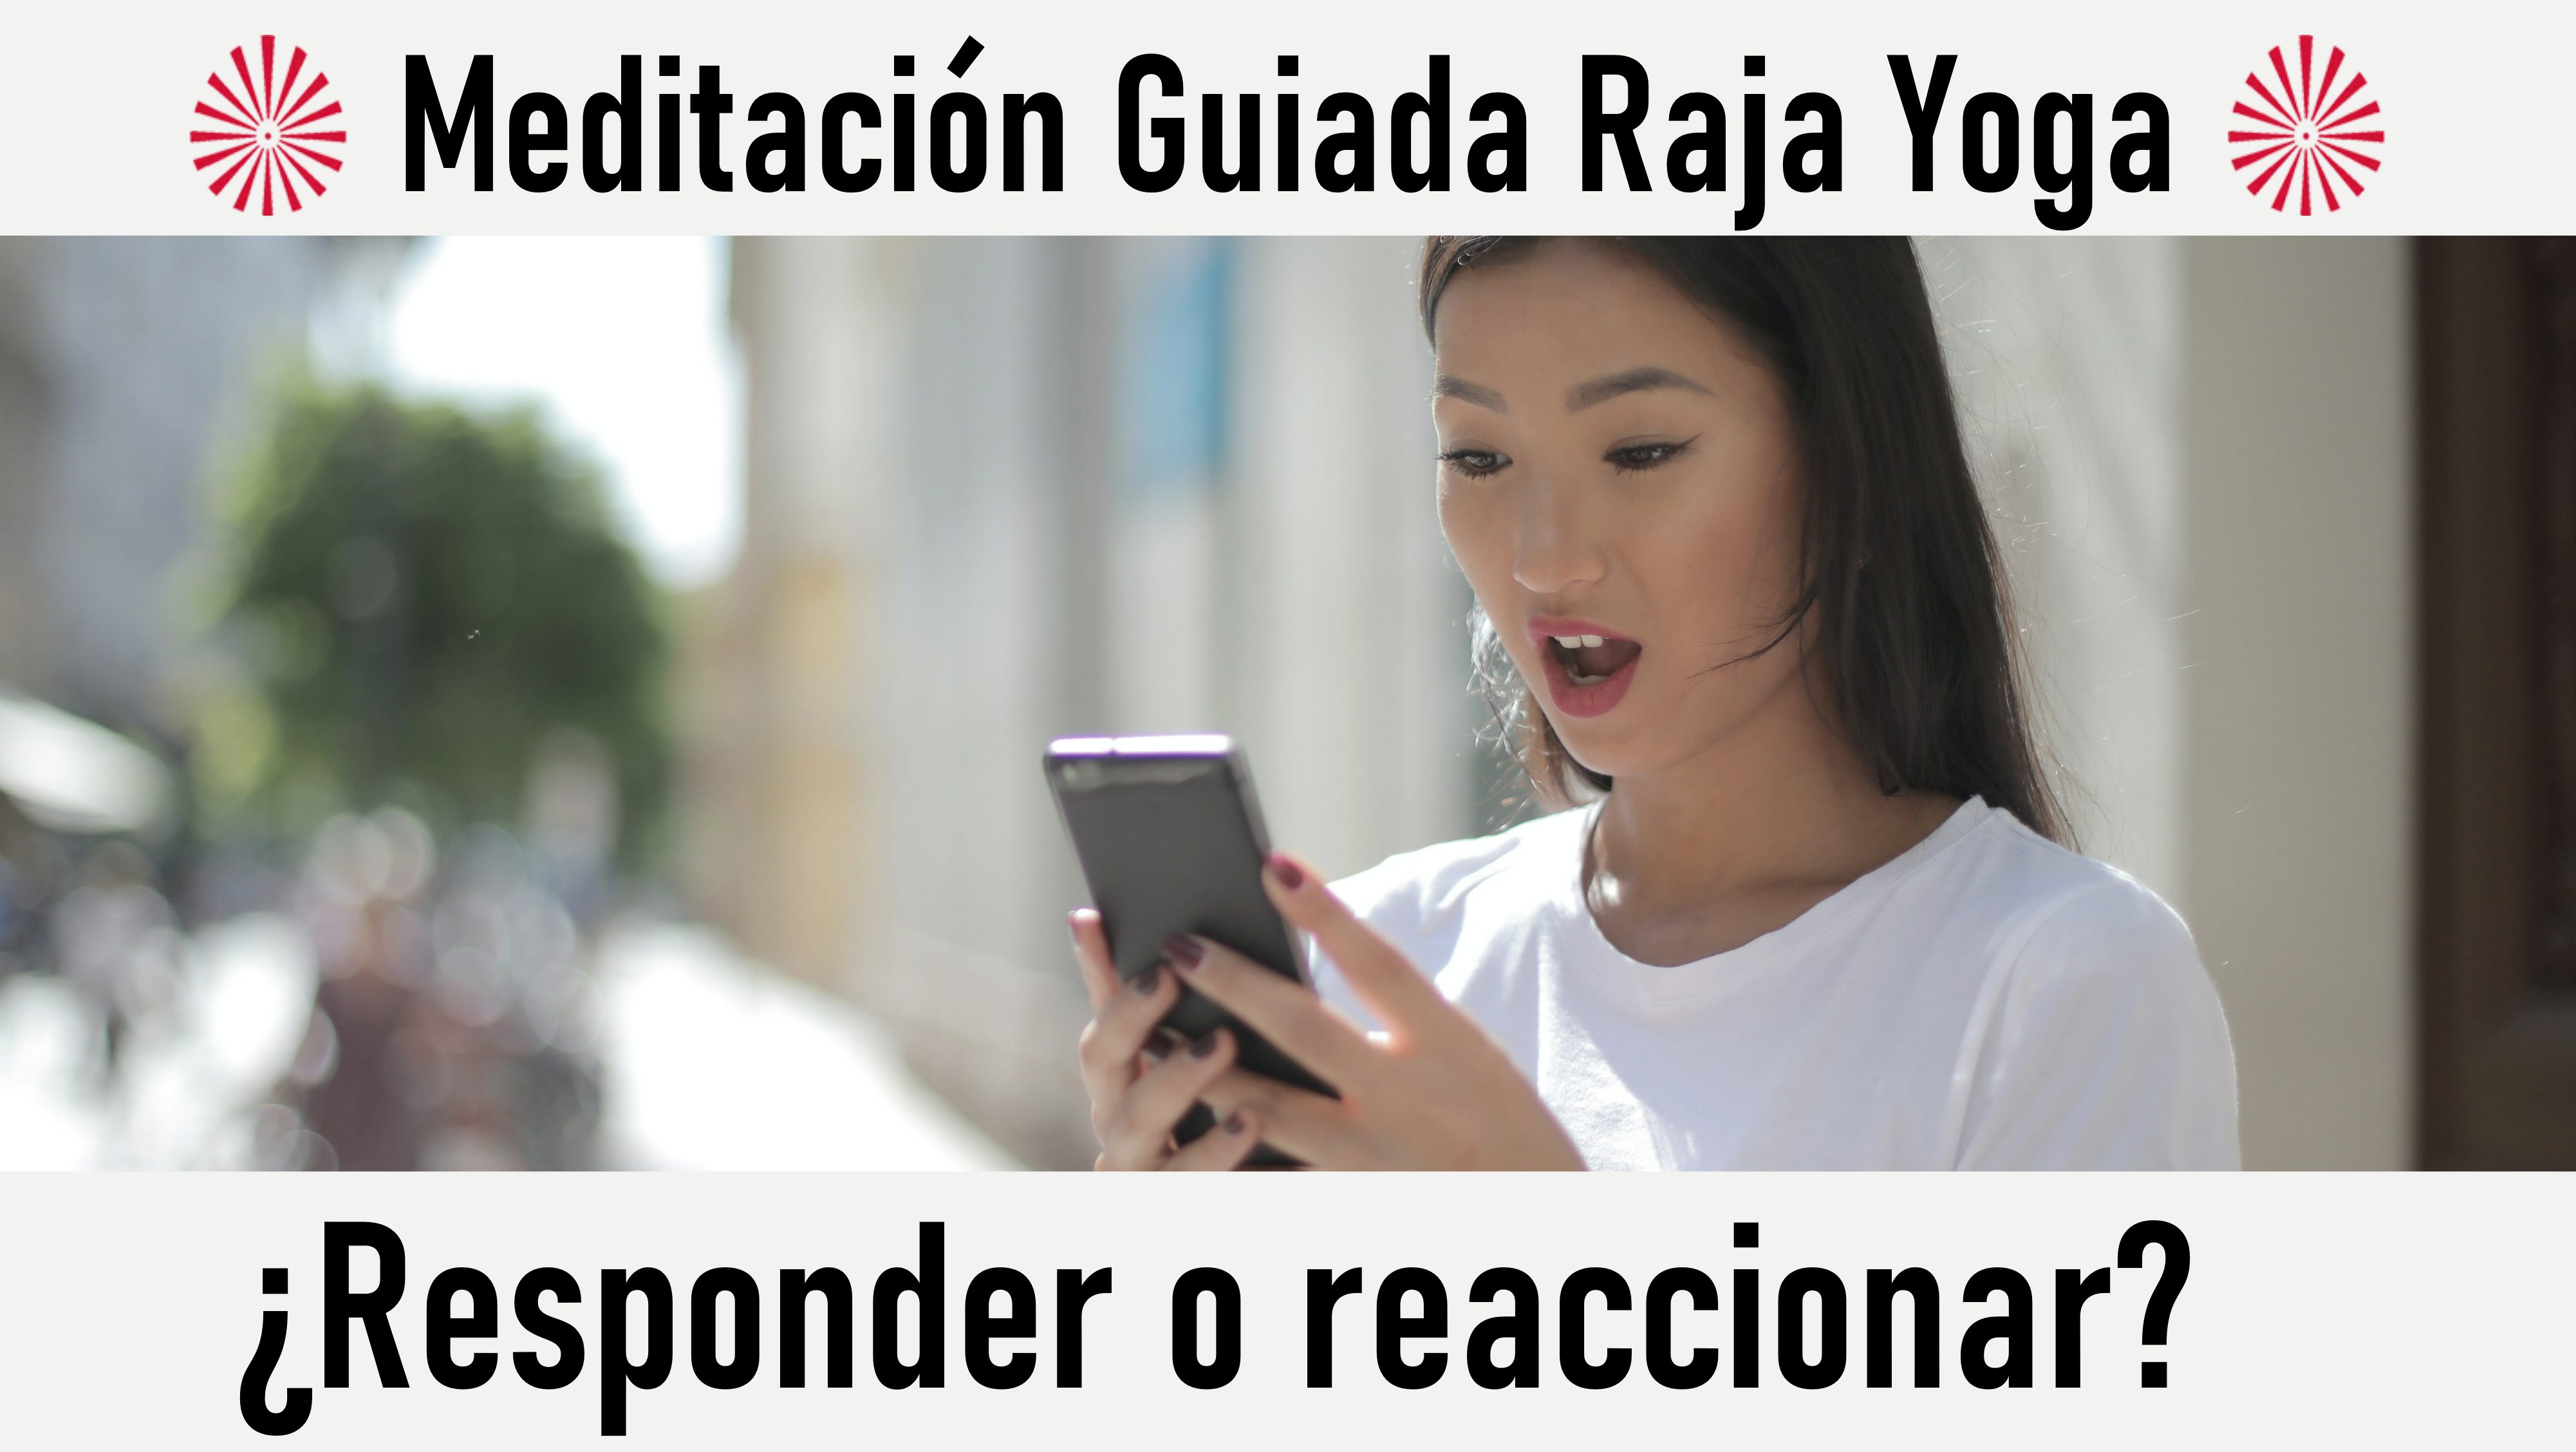 Meditación Raja Yoga: ¿Responder o reaccionar? (7 Octubre 2020) On-line desde Sevilla